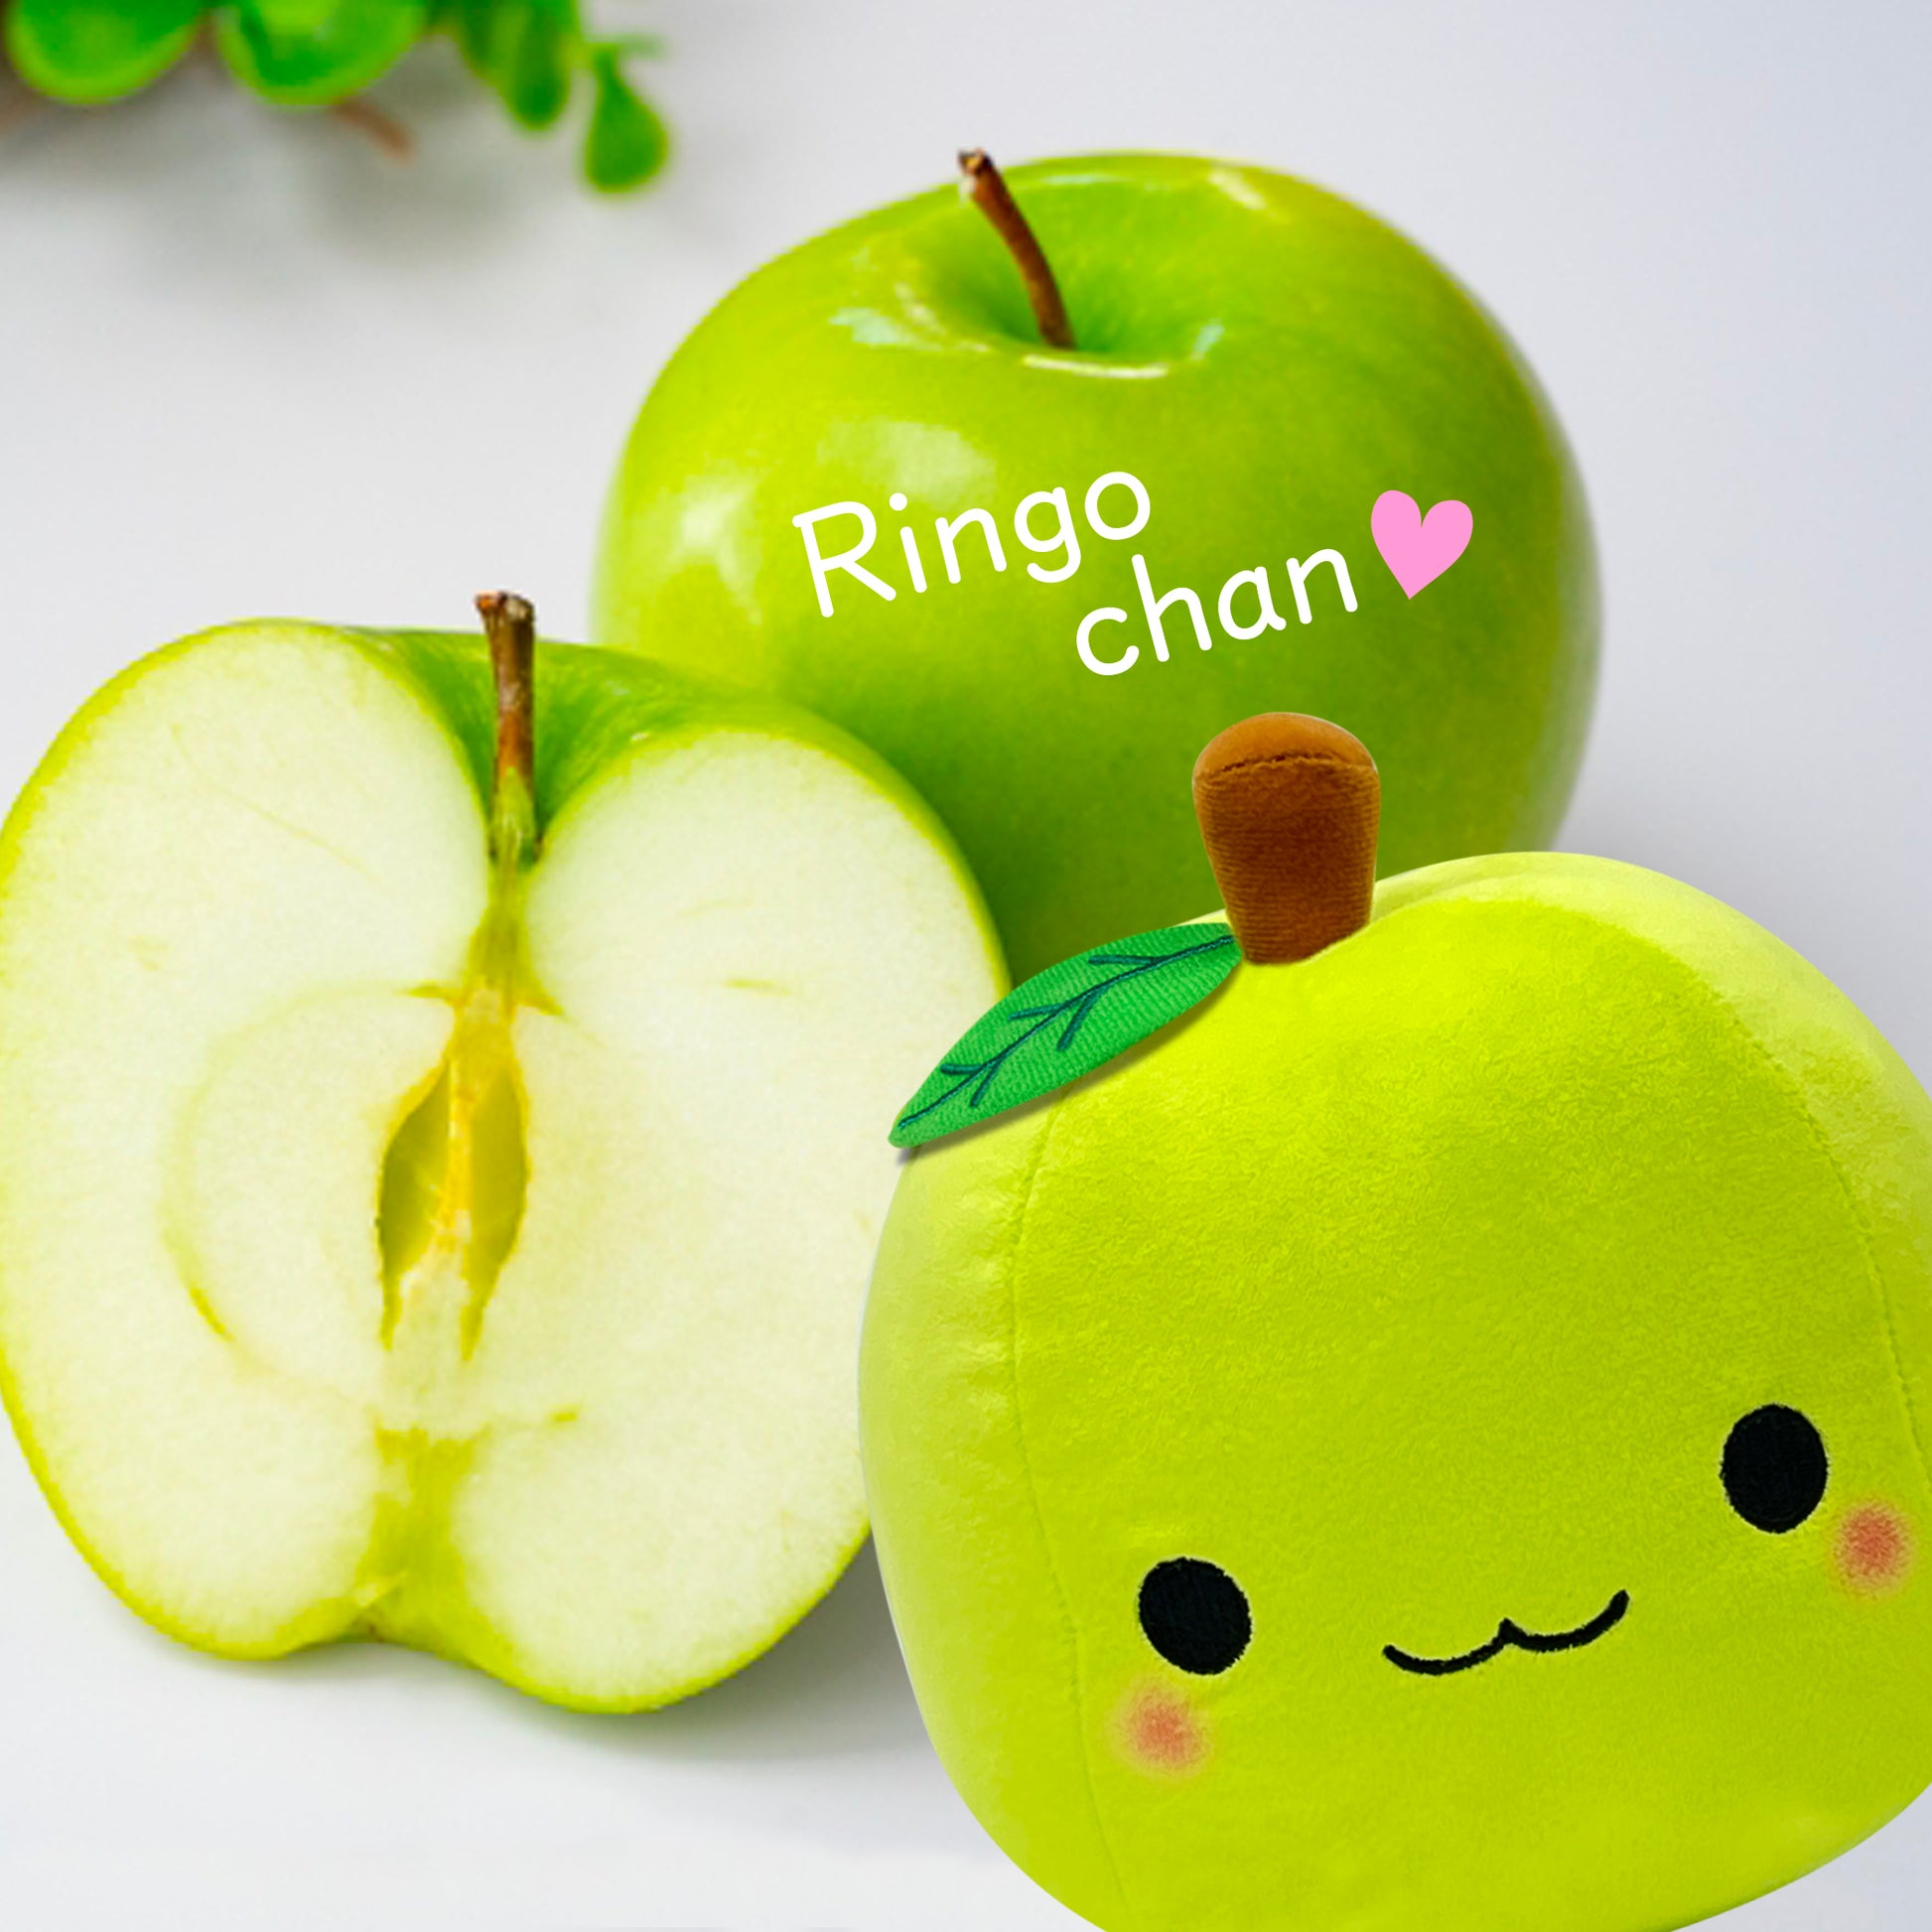 Instagram of Apple Fruit Stuffed Toy Ringochan Green